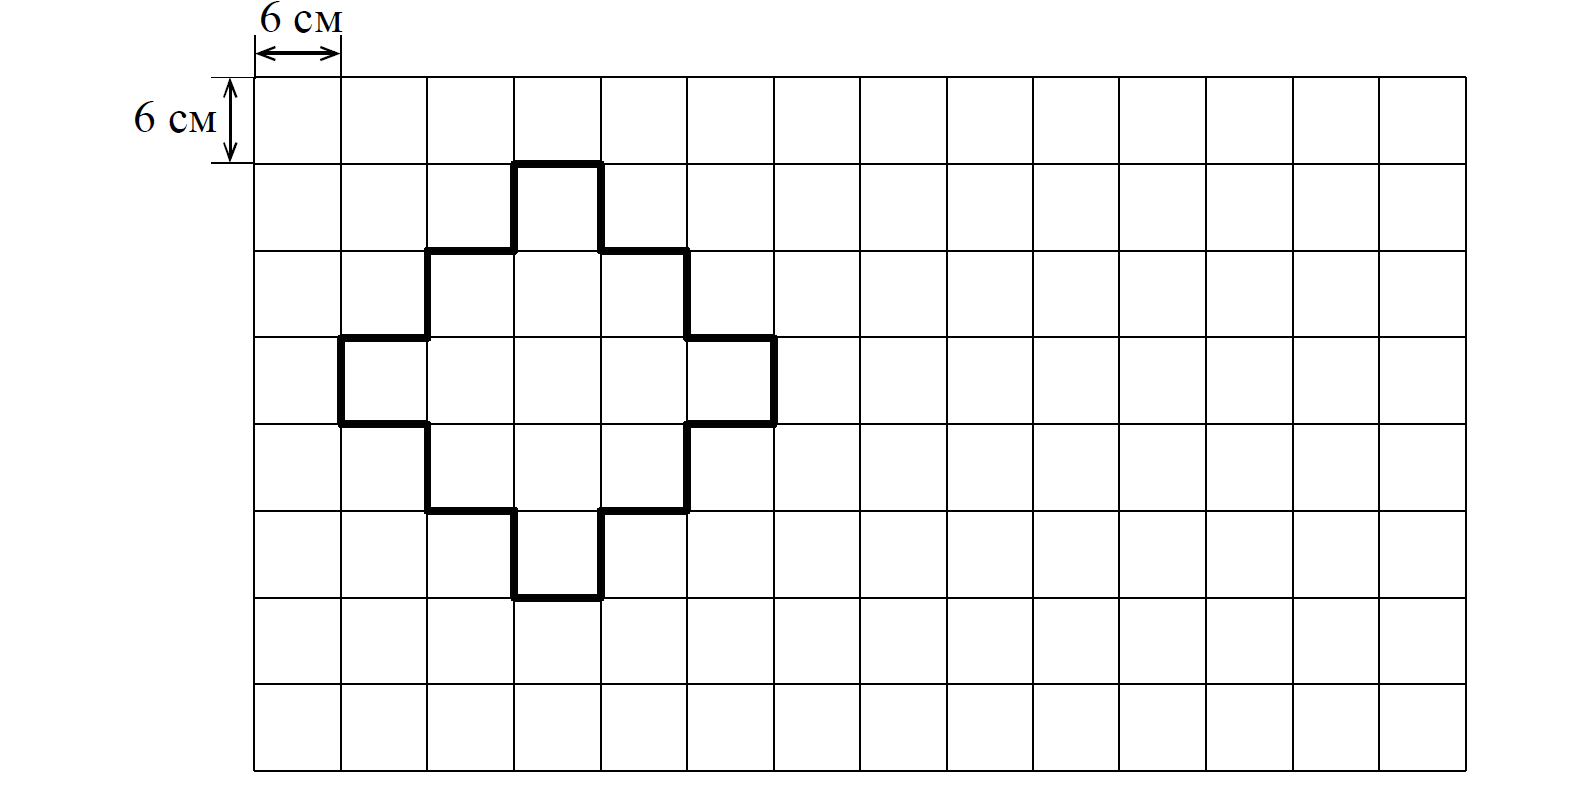 Начертите прямоугольник периметр которого равен 112. Поле расчерченное на квадраты. На рисунке дано поле расчерченное на квадраты. Прямоугольники расчерченные на квадратные см. На рисунке дано поле расчерченное на квадраты со стороной 6.